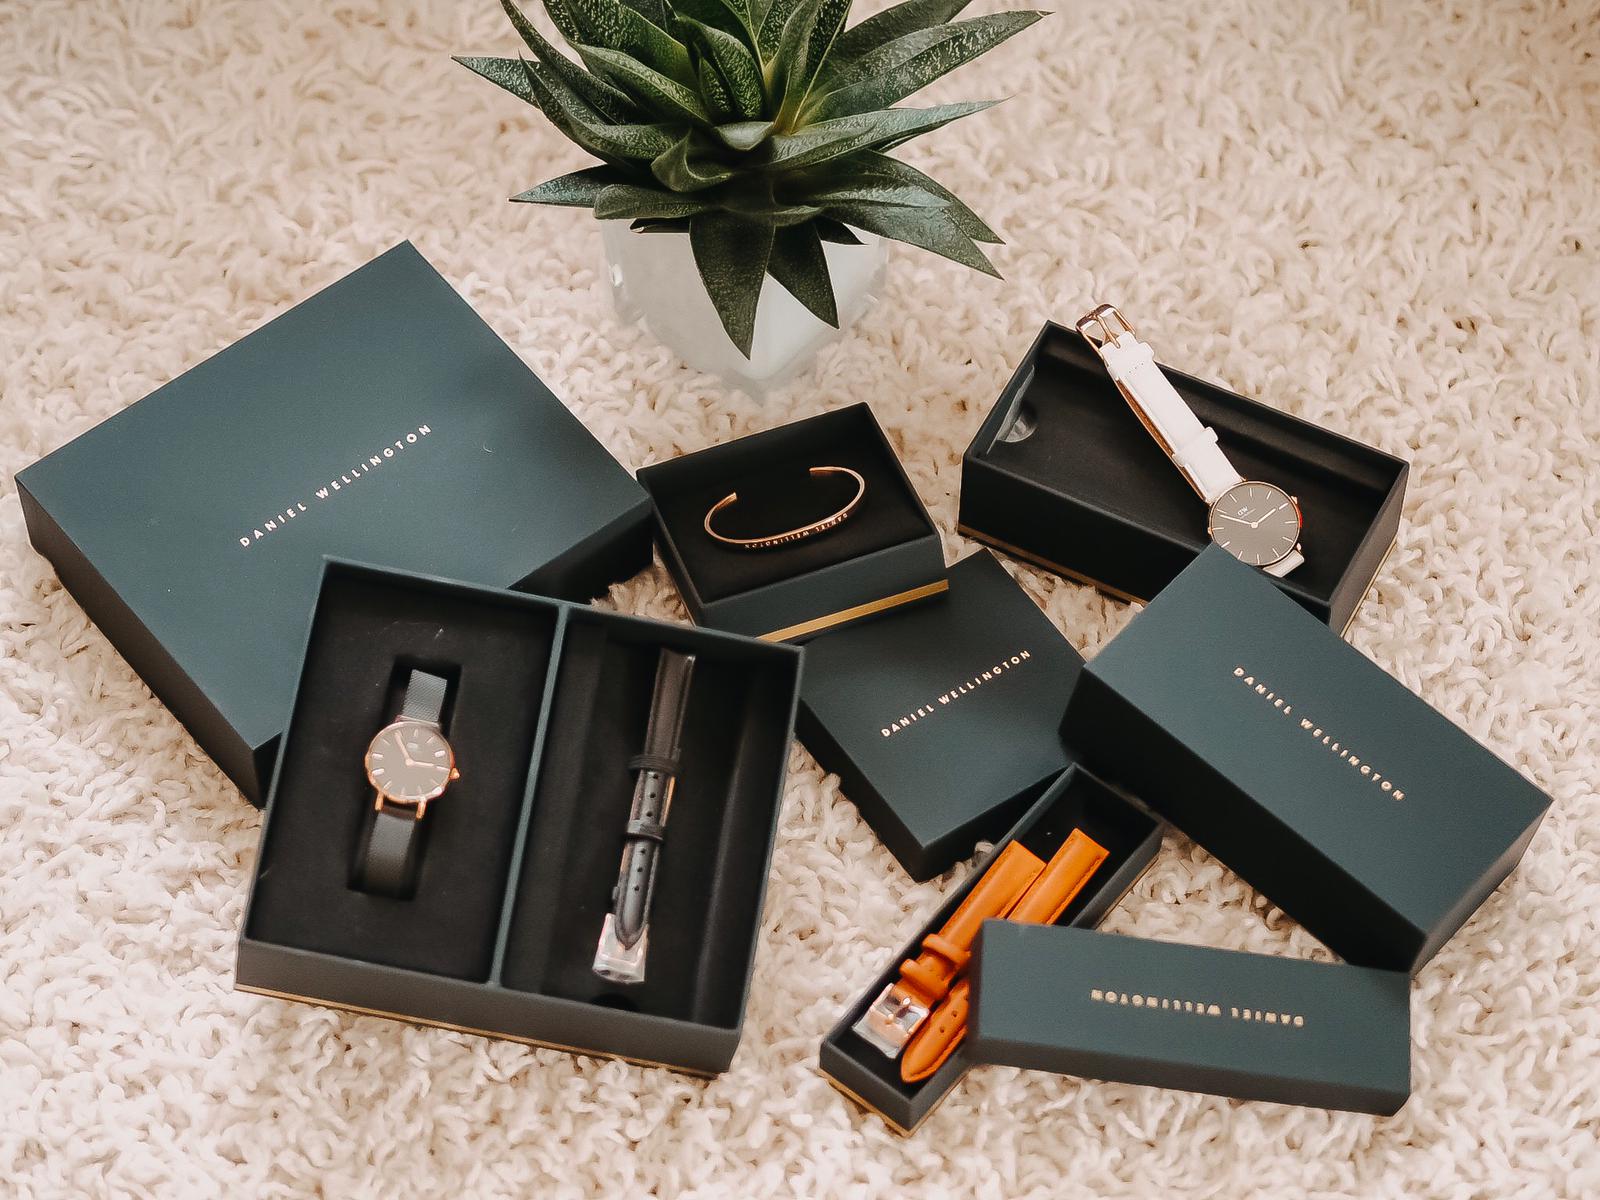 Ich trage besonders gerne im Alltag schöne Uhren von Daniel Wellington. Gefunden habe ich eine große Auswahl an Uhren und Schmuck bei Valmano im Onlineshop.